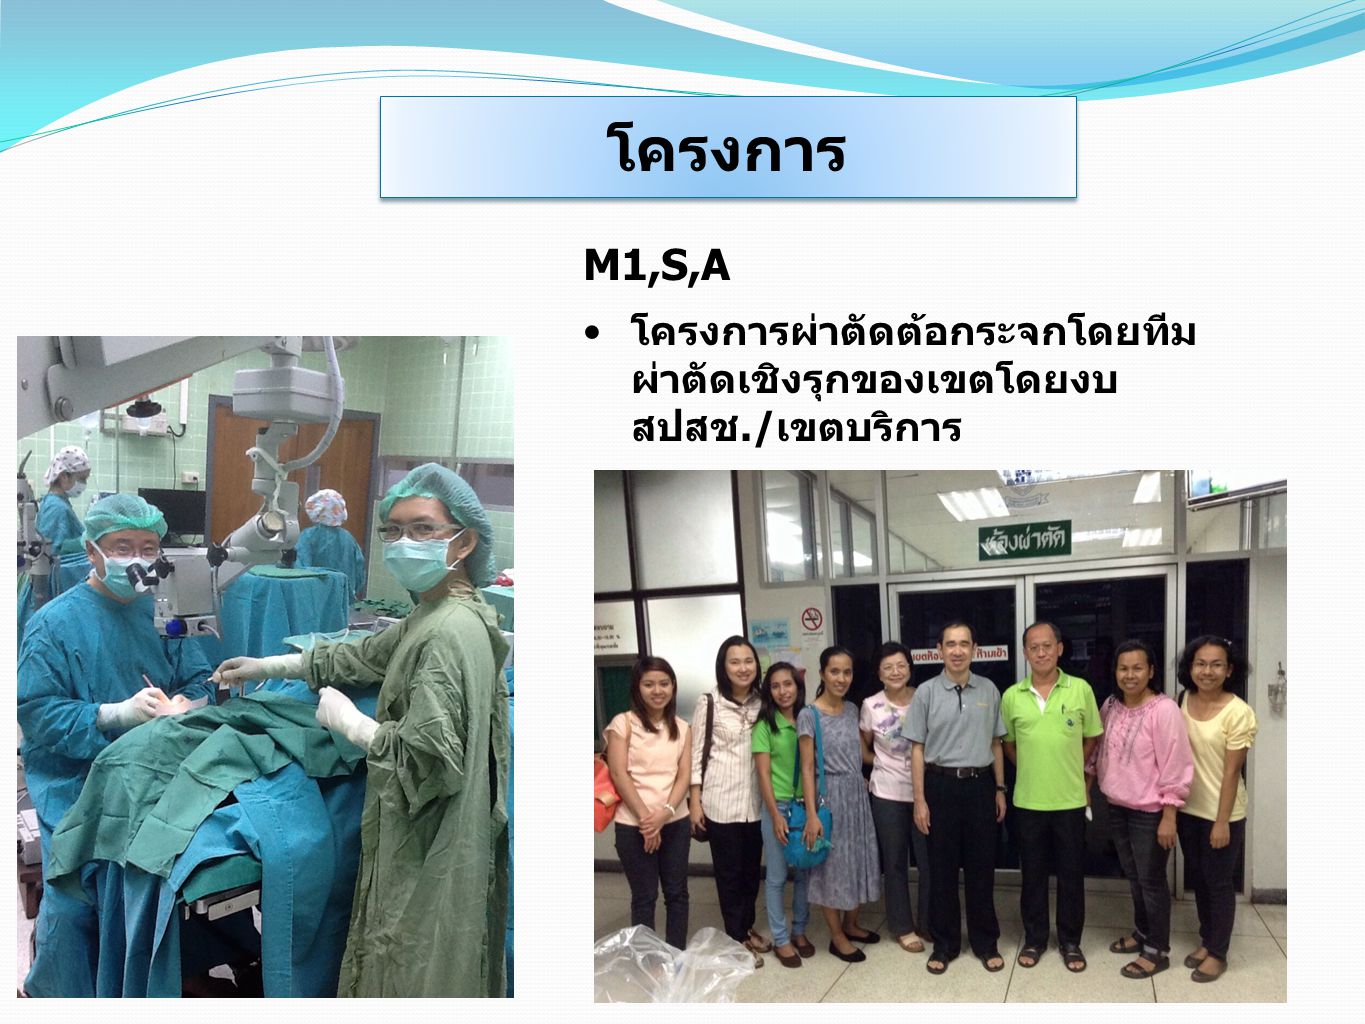 โครงการ M1,S,A โครงการผ่าตัดต้อกระจกโดยทีมผ่าตัดเชิงรุกของเขตโดยงบ สปสช./เขตบริการ